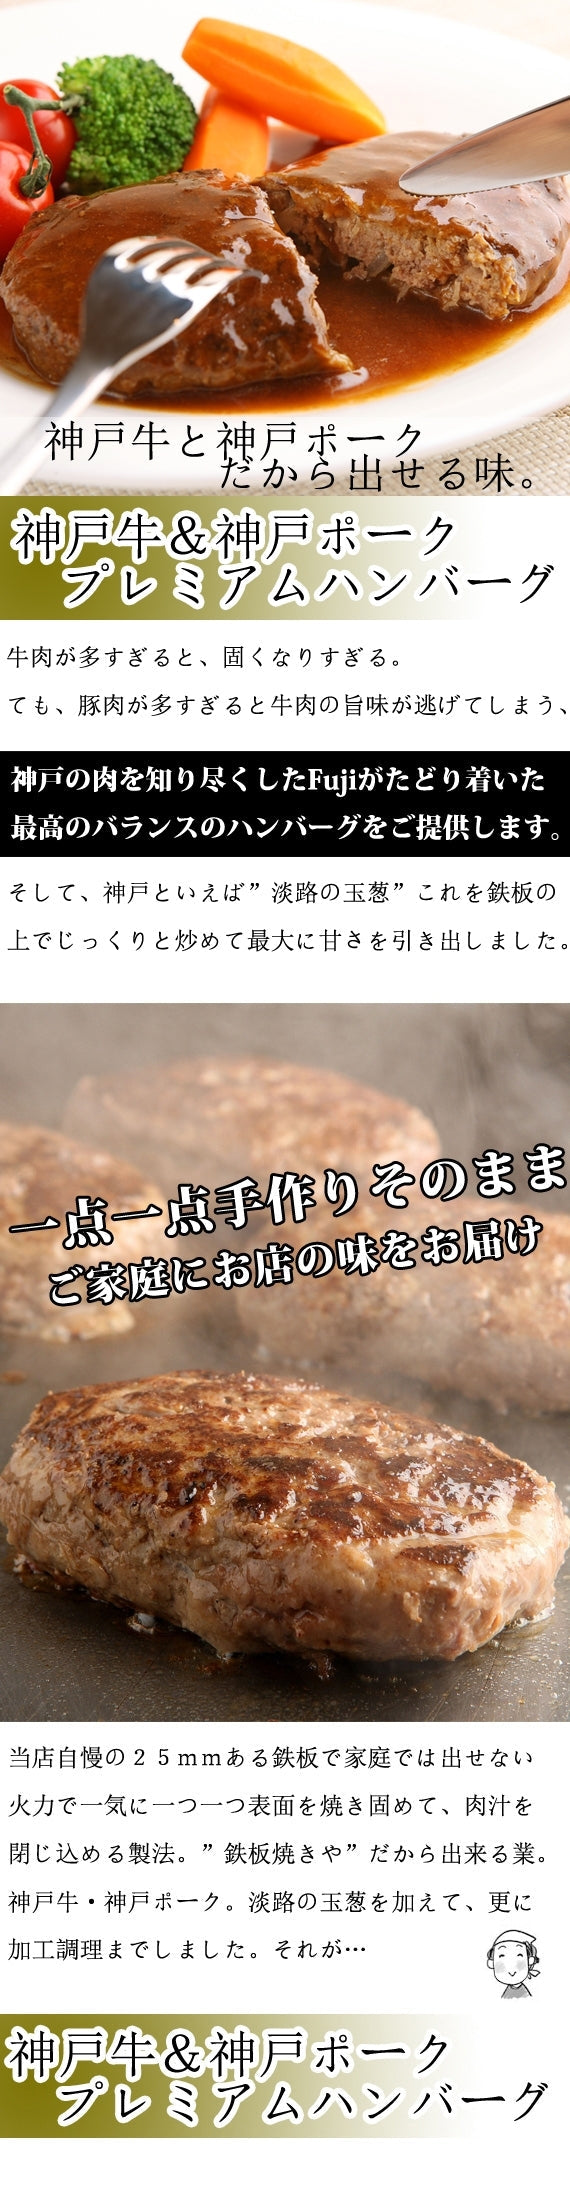 神戸牛3種類6品入ったビストロセット 50セット限り【お中元2022】【精肉・肉加工品】